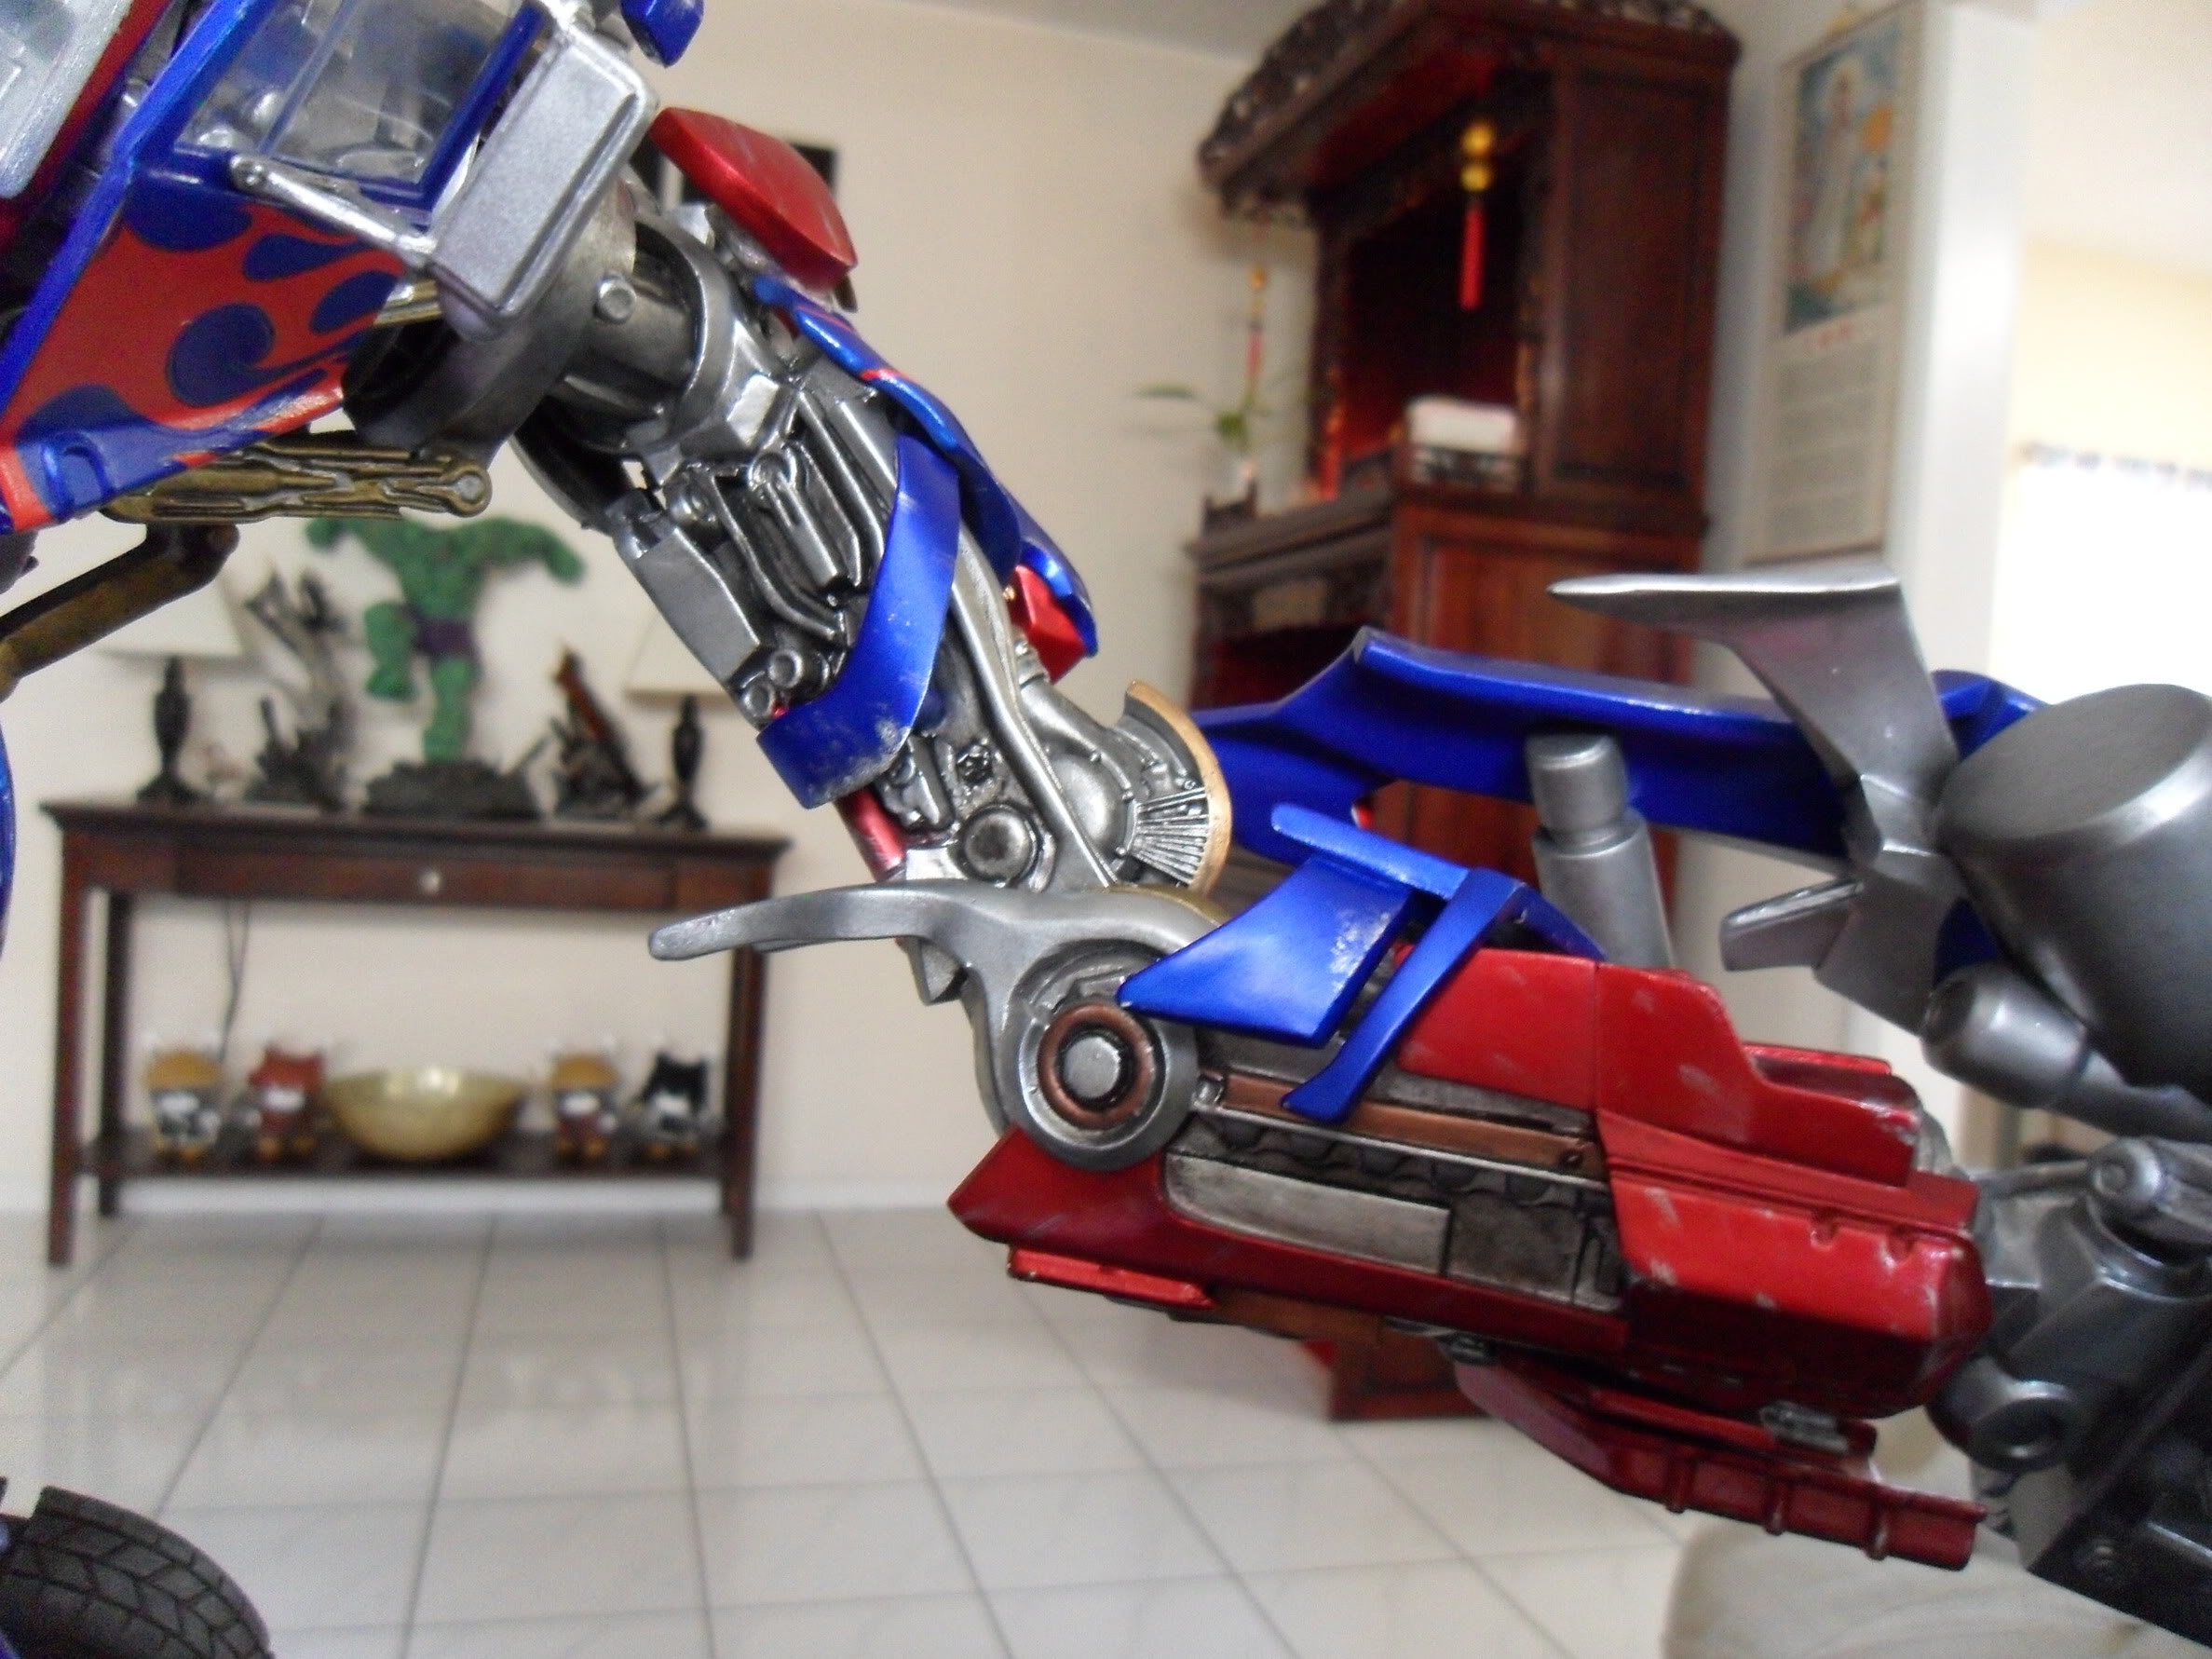 [Sideshow] Transformers - Optimus Prime Maquette - FOTOS OFICIAIS!!! Pág. 02 - Página 5 SAM_1316